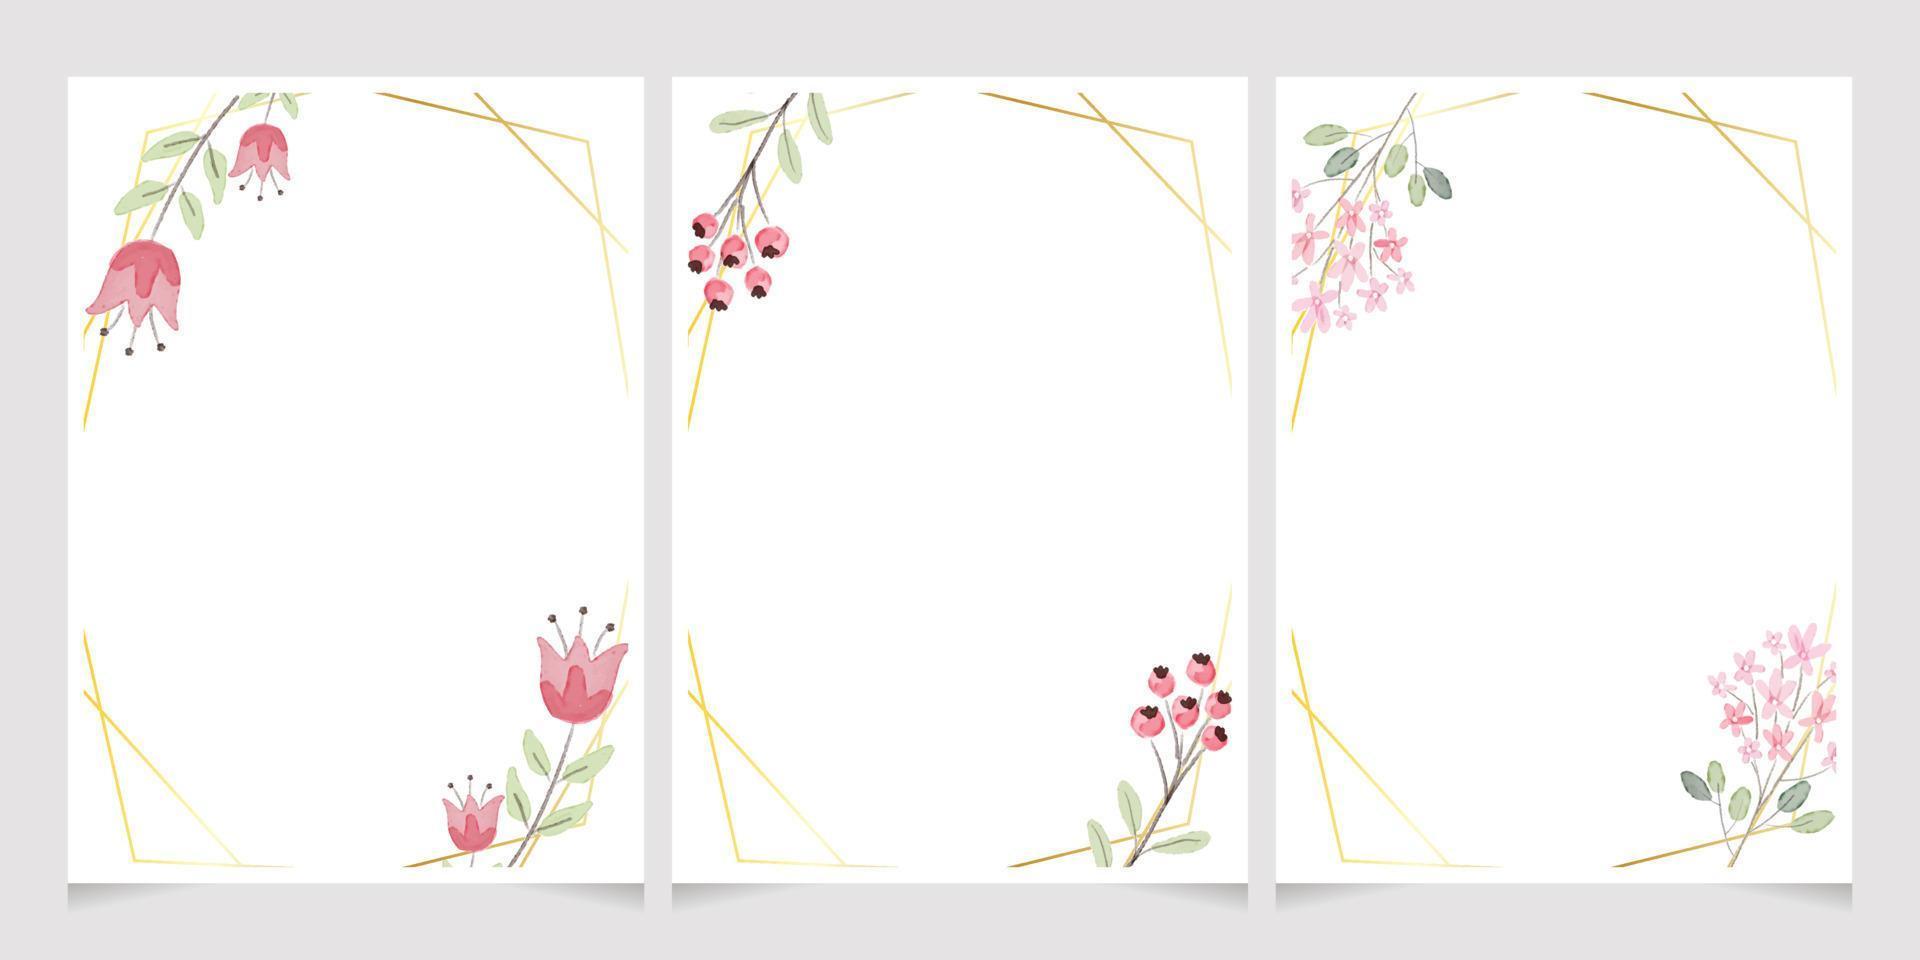 Aquarell botanische Handzeichnung Blätter Kranz mit winzigen rosa und gelben Blumen Hochzeitseinladungskarte Vorlage 5 x 7 Sammlung vektor